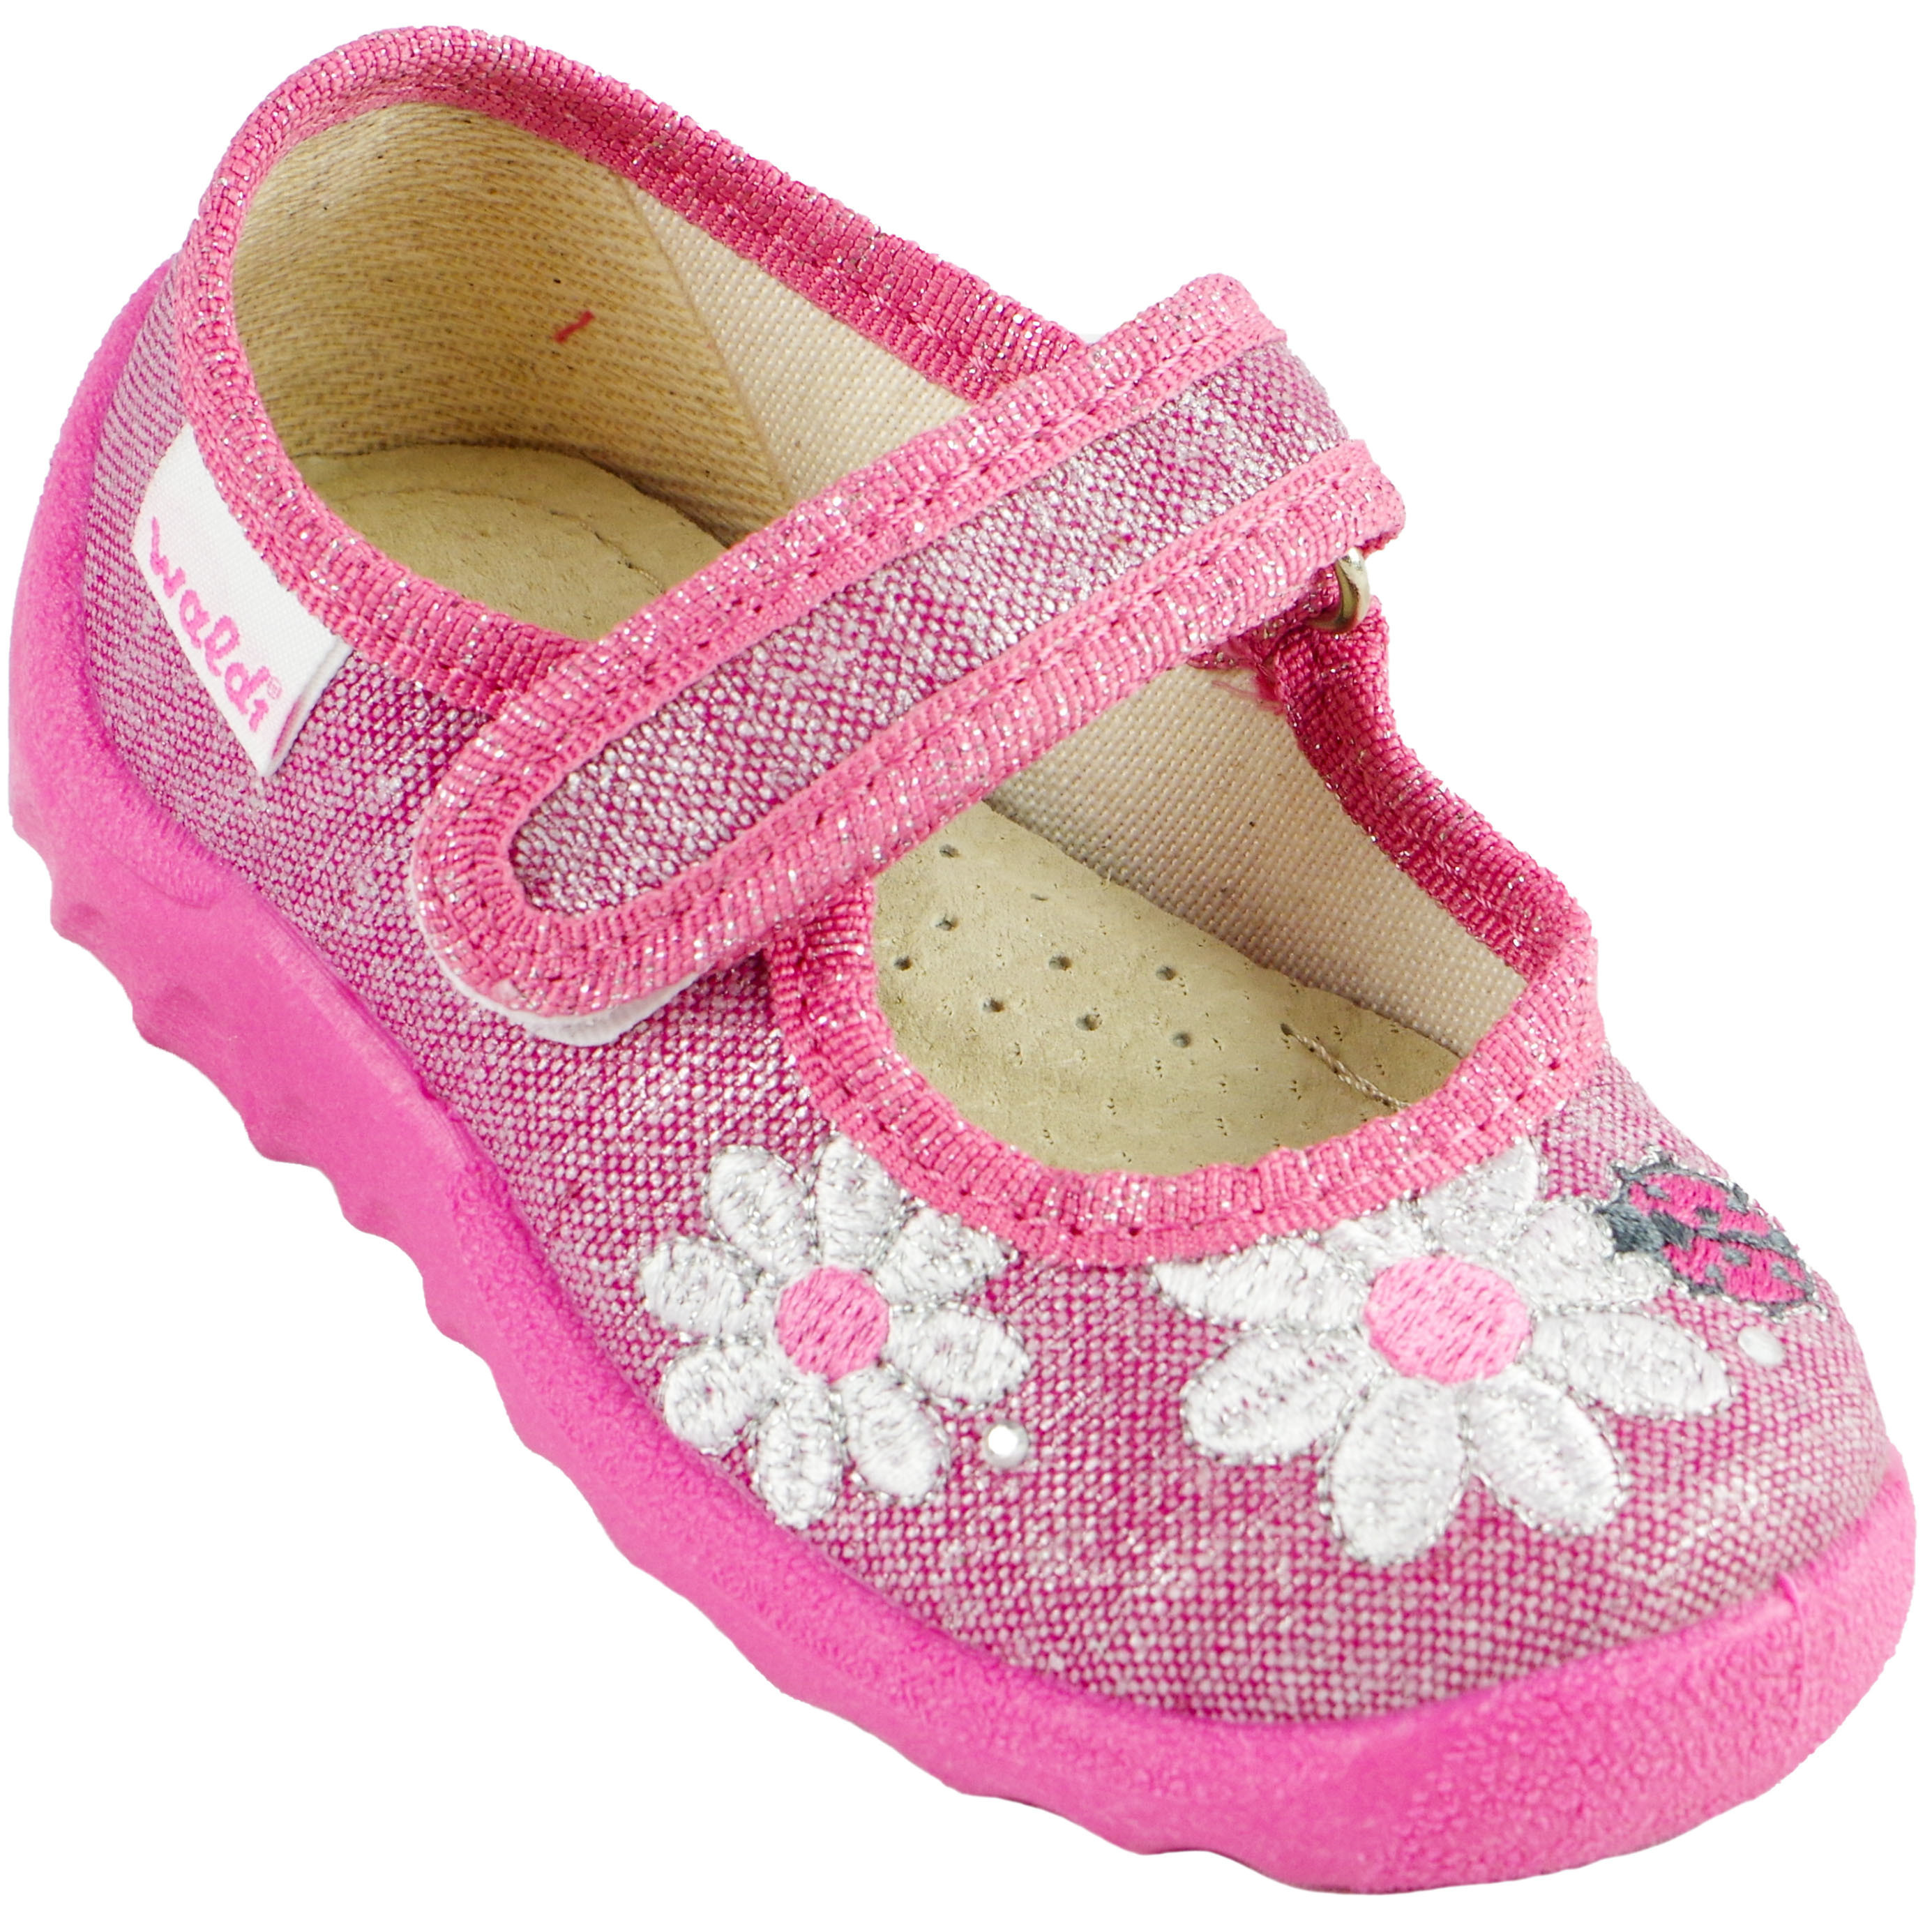 Текстильная обувь для девочек Waldi Тапочки детские (1297) цвет Розовый 21-27 размеры – Sole Kids. Фото 1